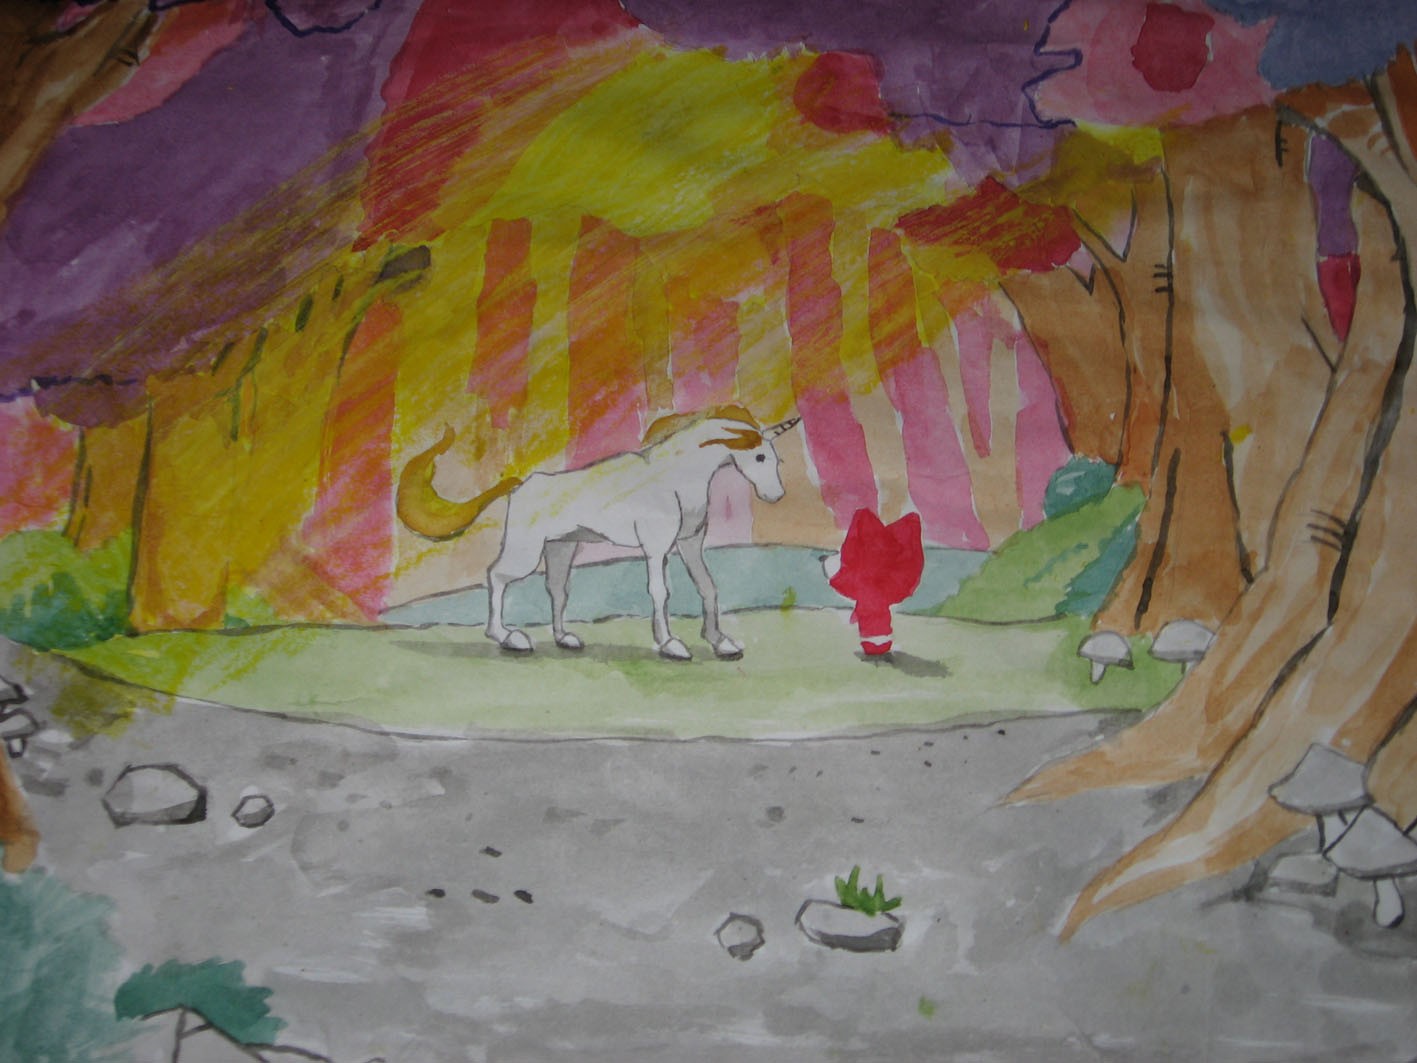 灰机】献给所有爱阿狸的朋友们一张手绘阿狸。